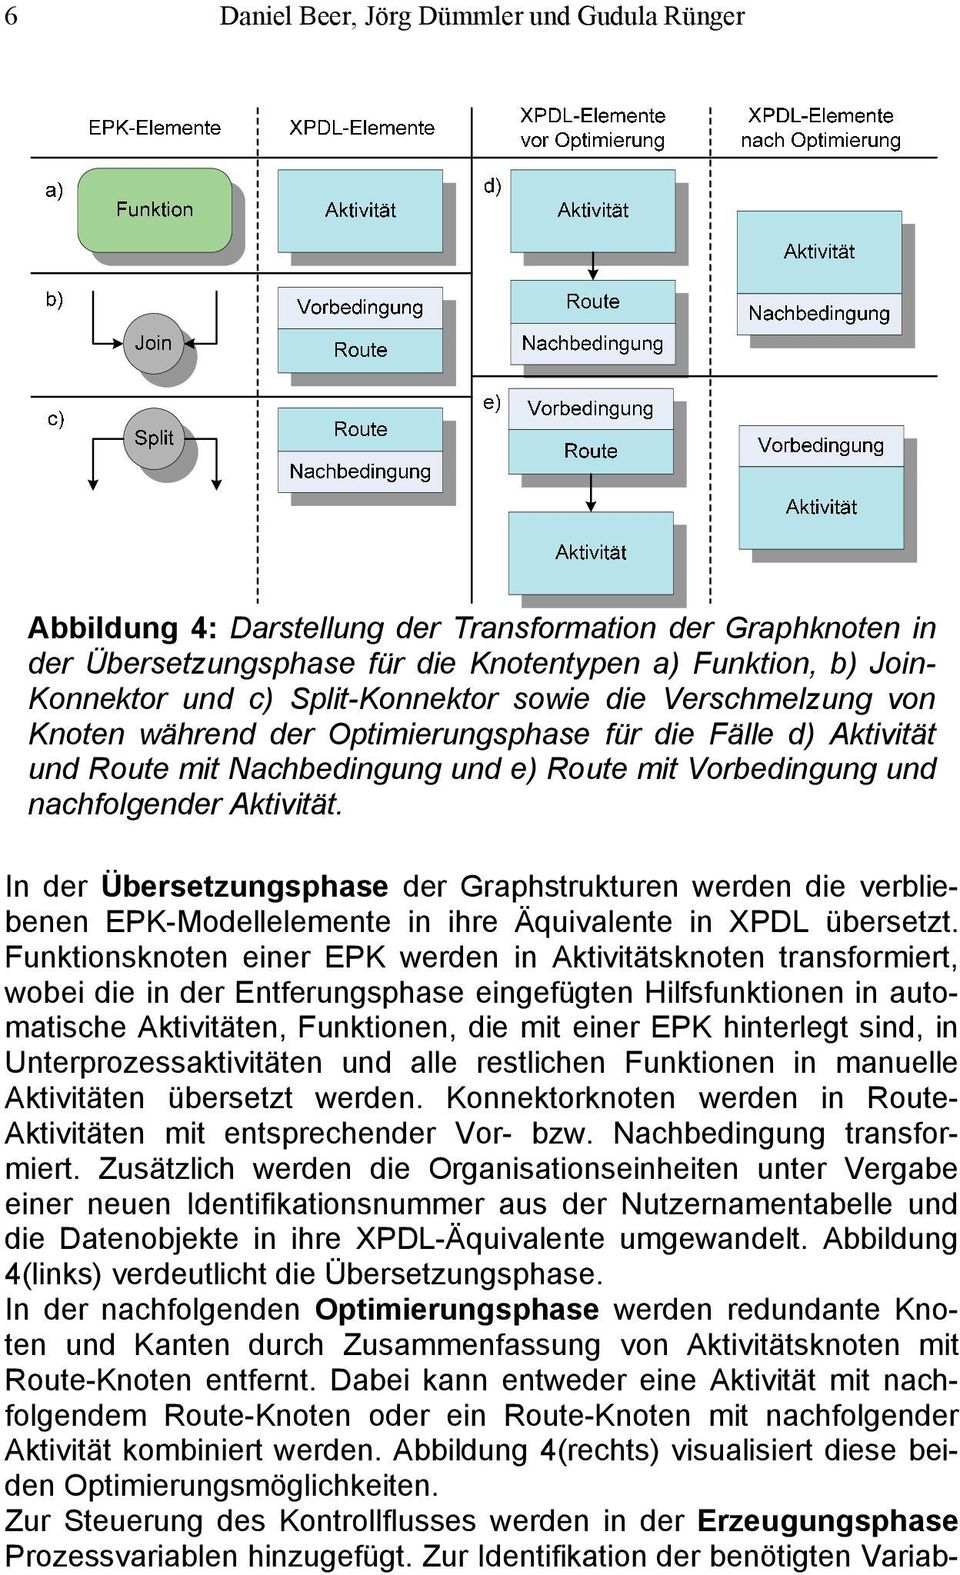 In der Übersetzungsphase der Graphstrukturen werden die verbliebenen EPK-Modellelemente in ihre Äquivalente in XPDL übersetzt.